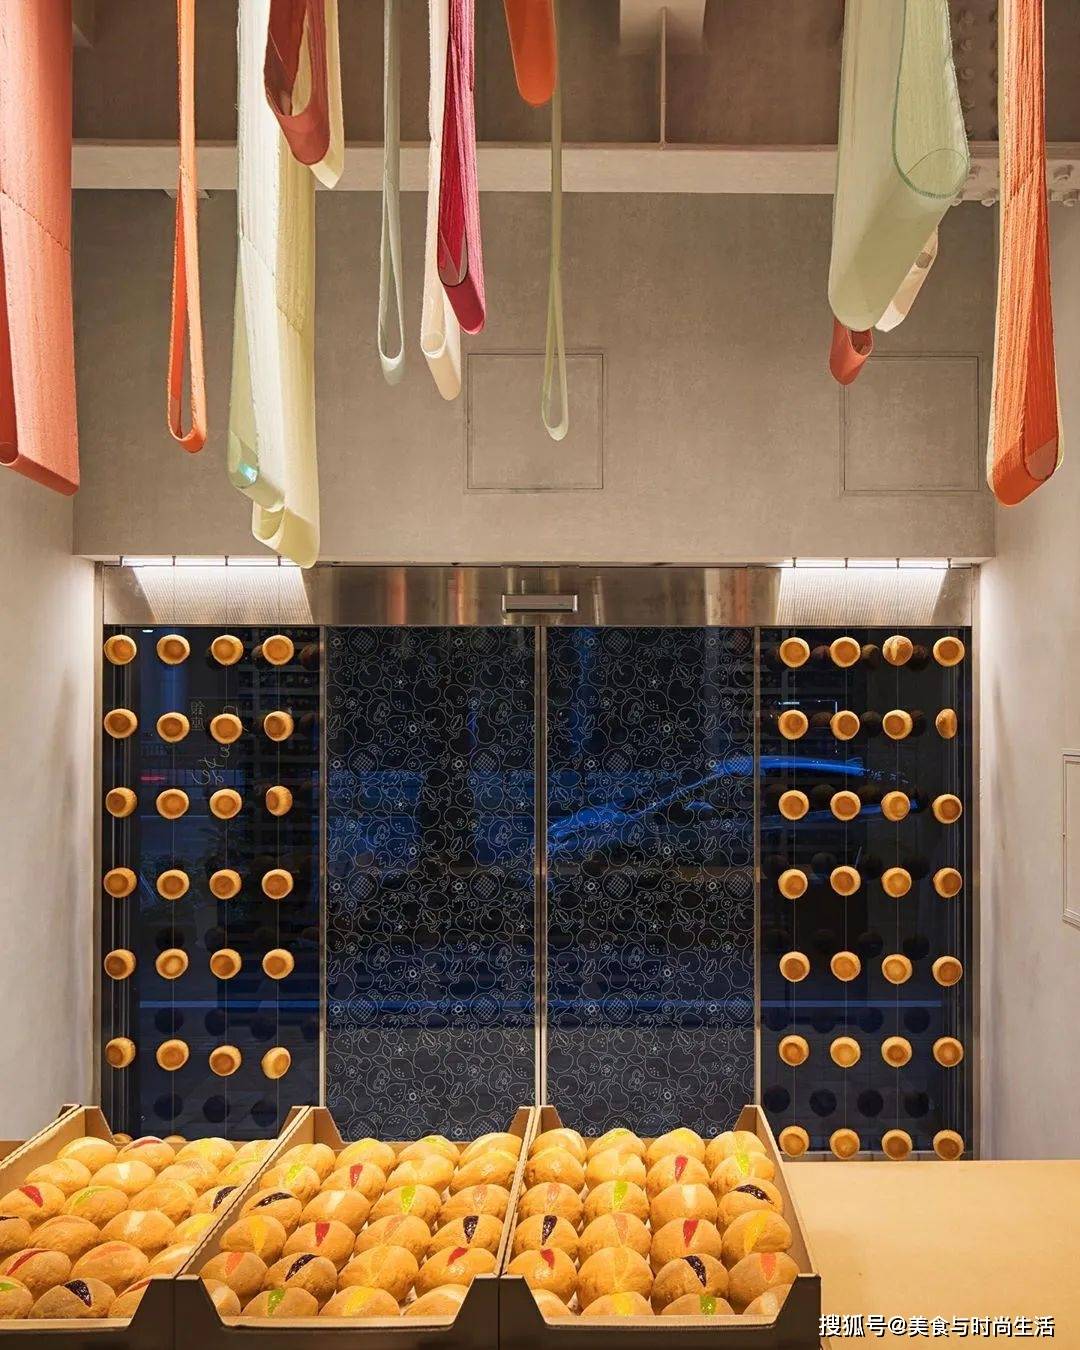 1天只出品300个面包！日本这家面包店究竟如何做到的